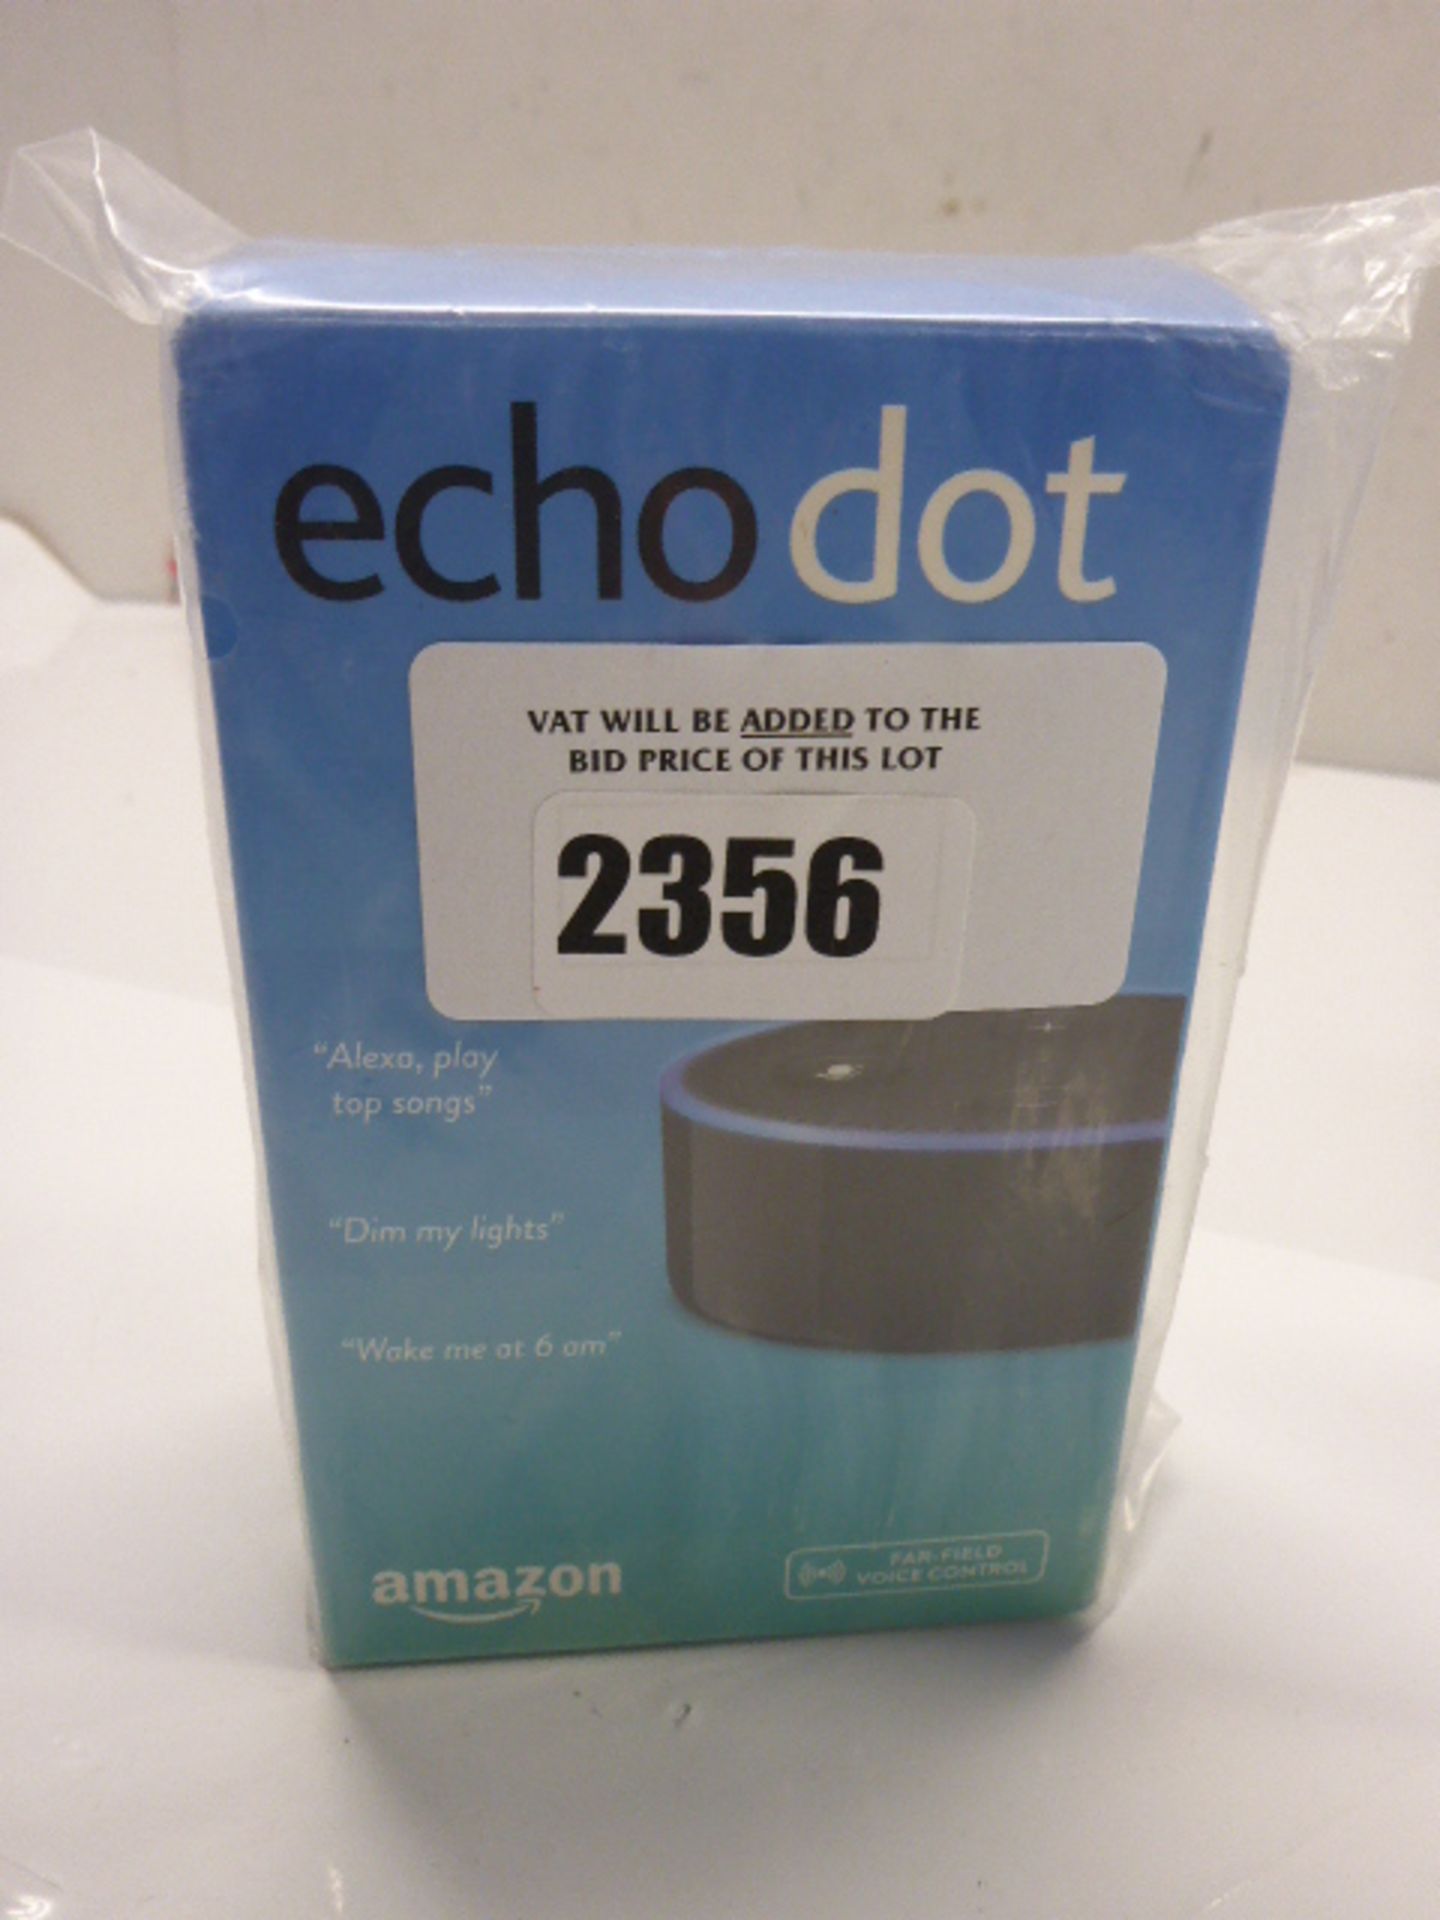 Amazon echo dot smart speaker.